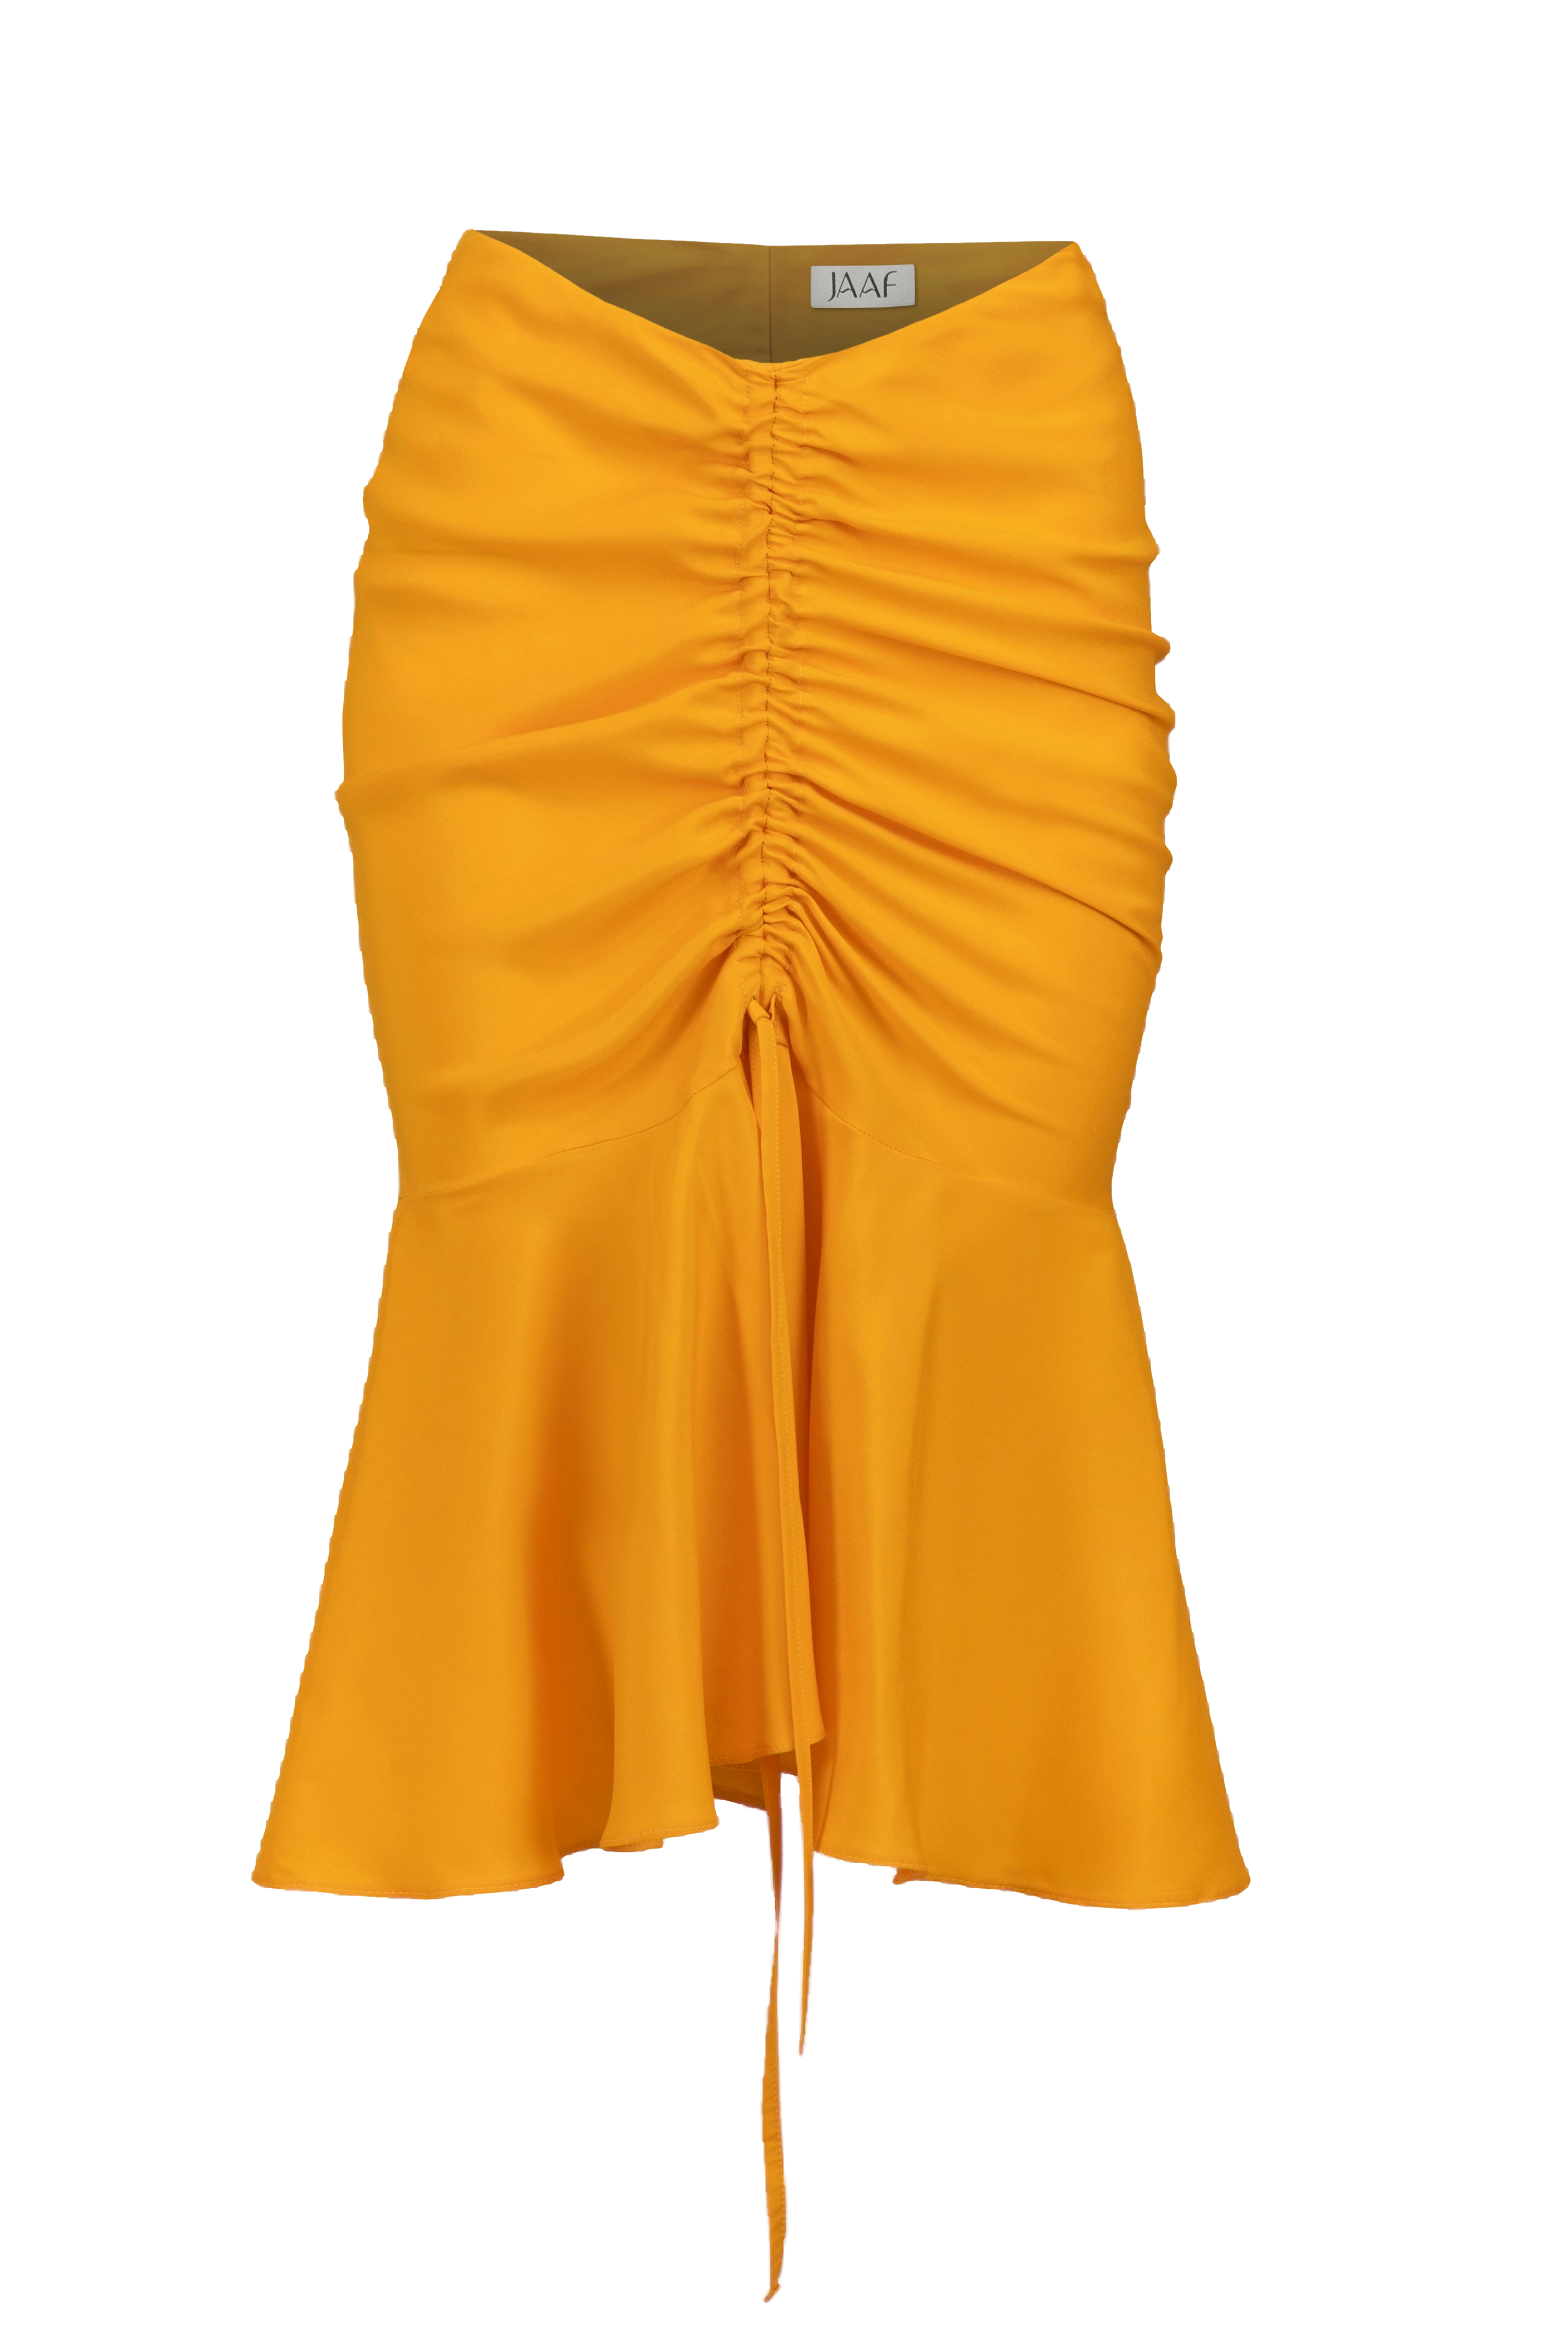 Jaaf Ruched Silk Skirt In Tangerine Orange